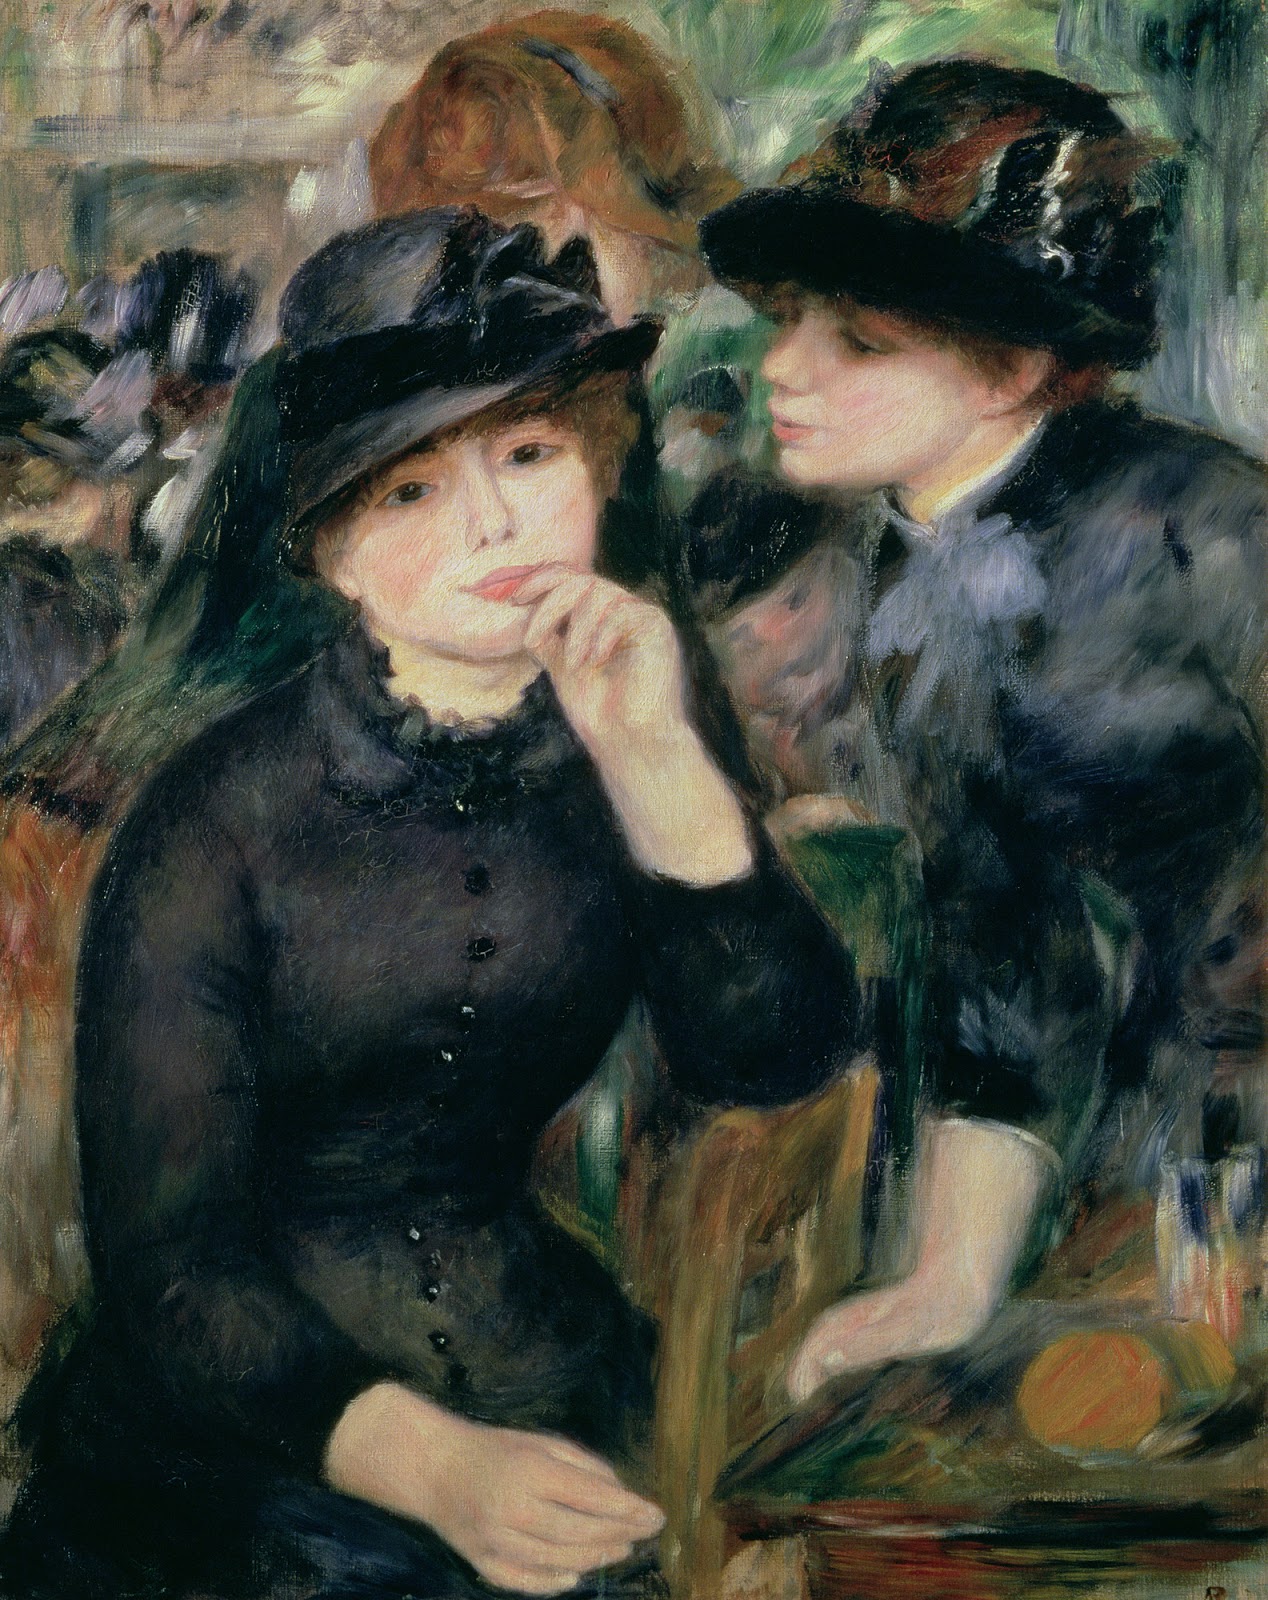 Pierre+Auguste+Renoir-1841-1-19 (814).jpg